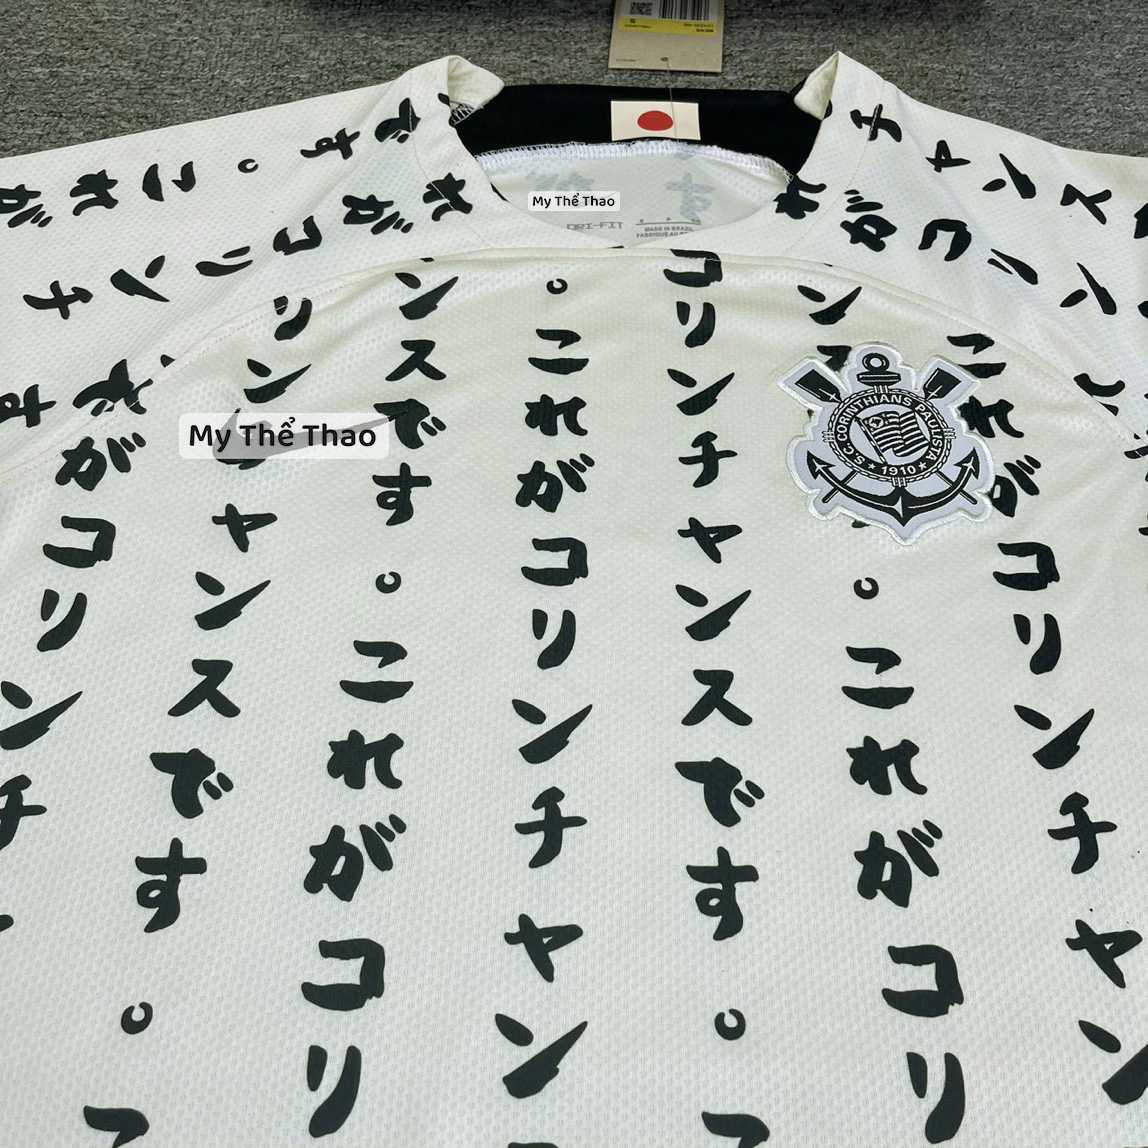 Bộ quần áo đá banh clb bóng đá Corinthians Paulista Nhật Bản hoạ tiết chữ thư pháp Shodo vàng logo thêu 3